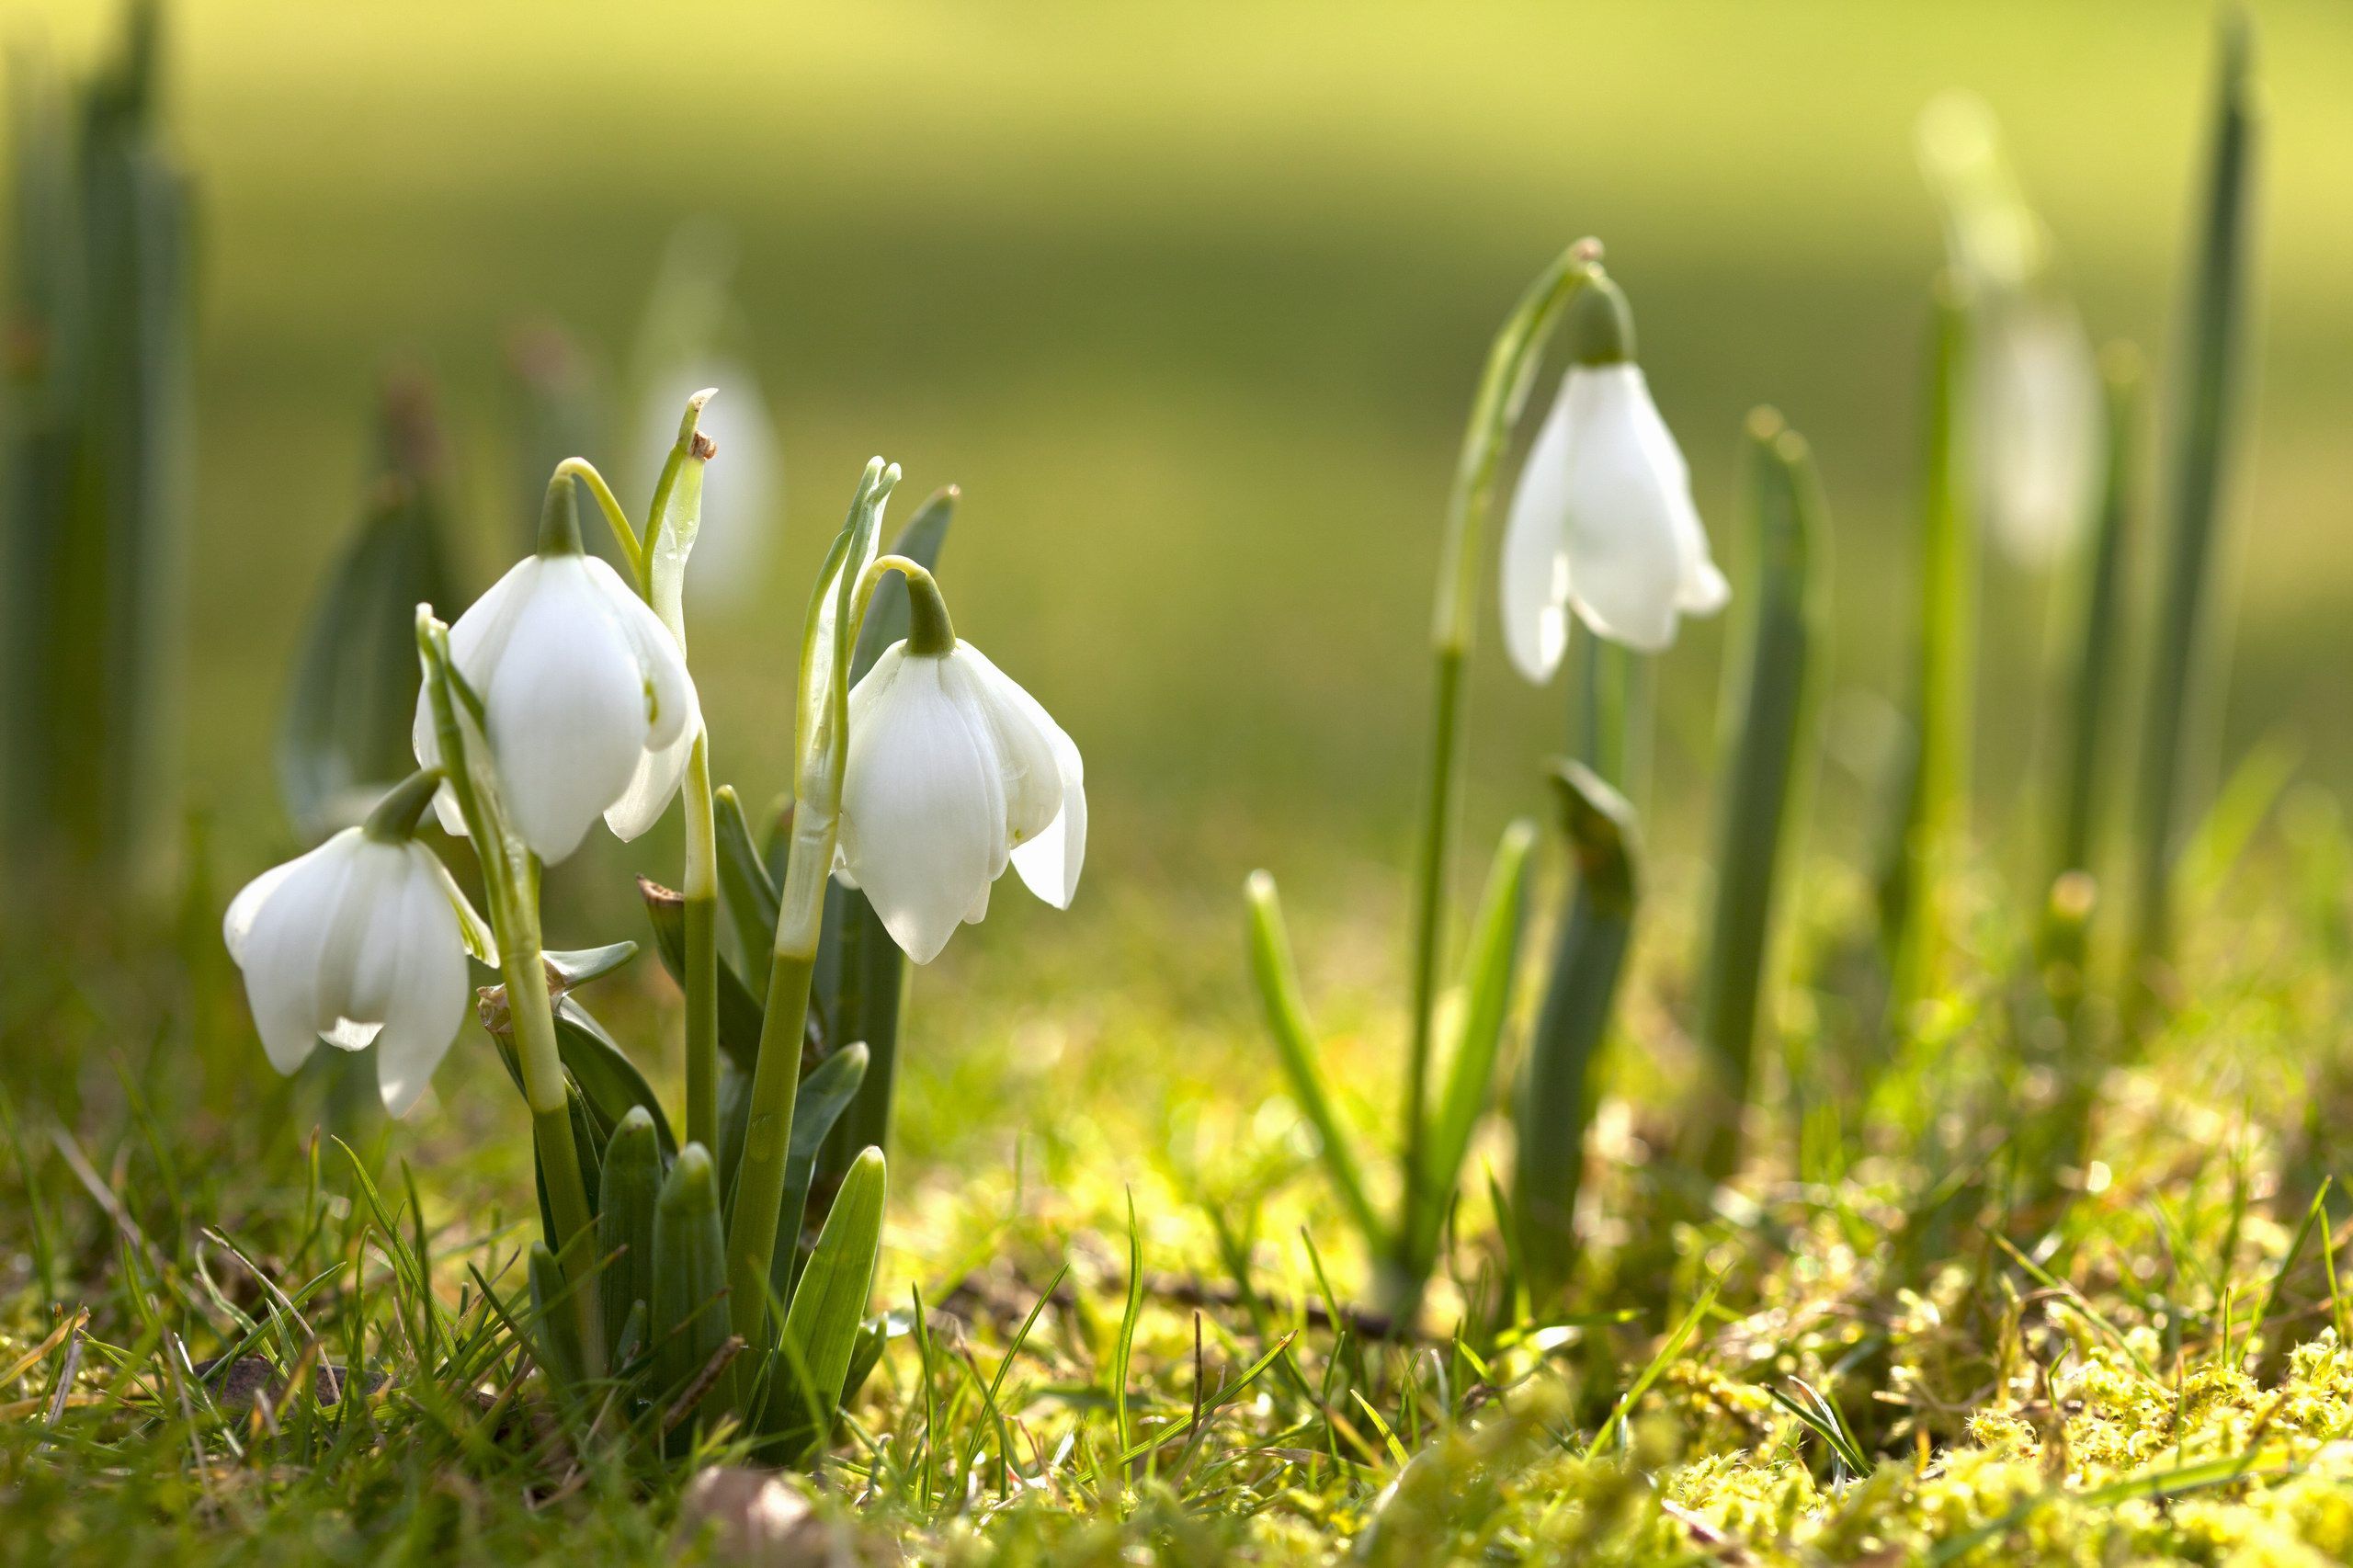 Những hình nền mùa xuân sẽ mang đến cho bạn những tia hy vọng, tràn đầy sức sống và màu sắc tươi tắn. Hãy dành chút thời gian để chiêm ngưỡng những gợi ý đầy ấn tượng về mùa xuân trong bộ sưu tập hình nền đầy chất lượng này.